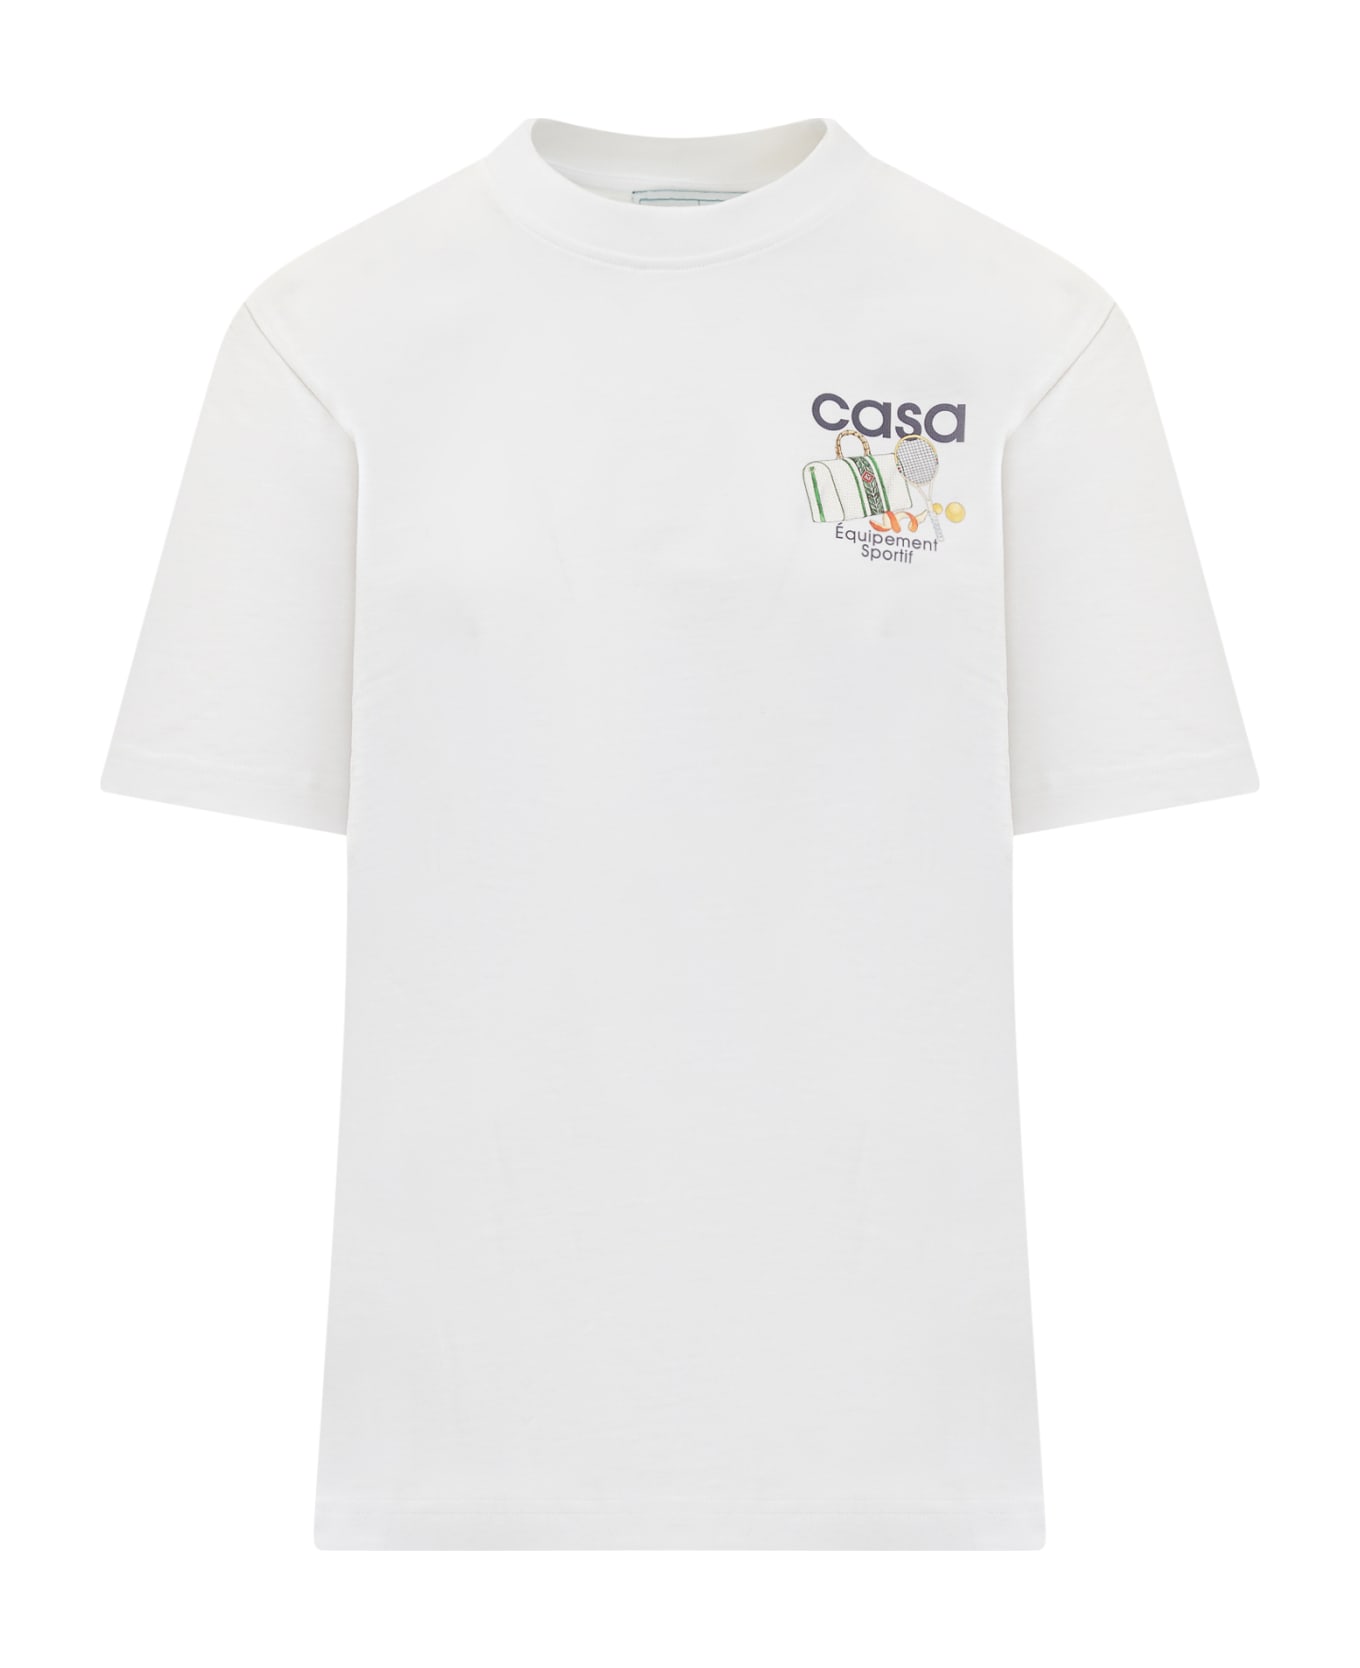 Casablanca Equipement Sportif T-shirt